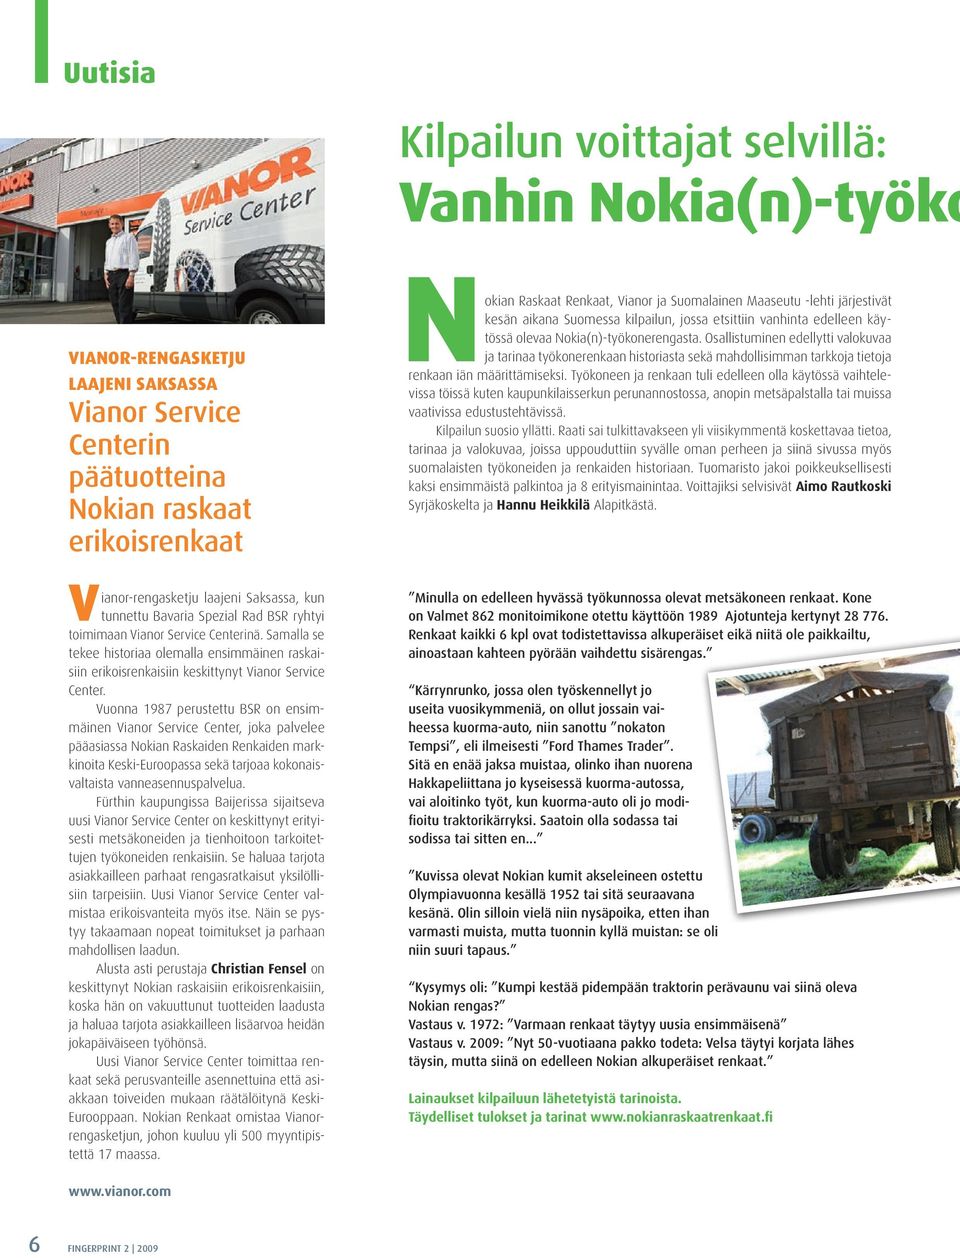 Vuonna 1987 perustettu BSR on ensimmäinen Vianor Service Center, joka palvelee pääasiassa Nokian Raskaiden Renkaiden markkinoita Keski-Euroopassa sekä tarjoaa kokonaisvaltaista vanneasennuspalvelua.